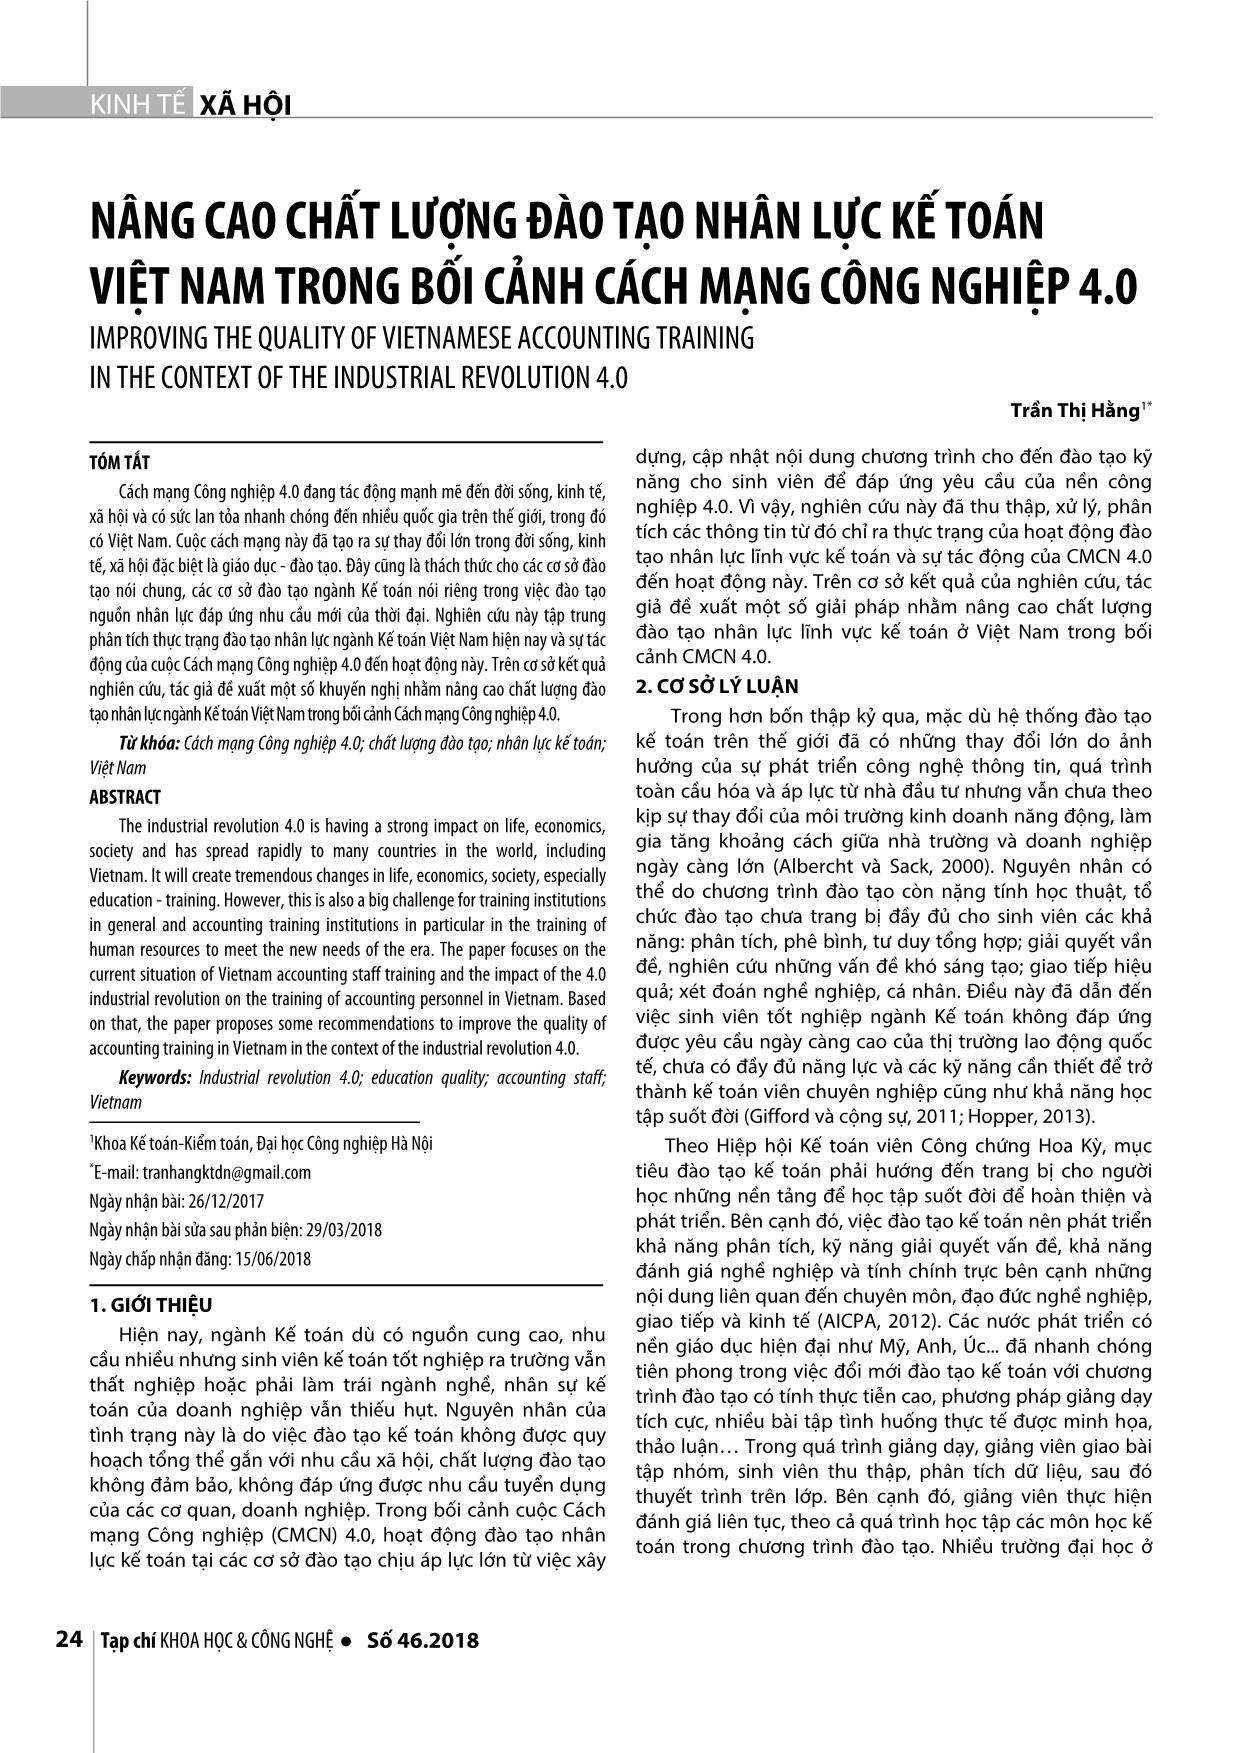 Nâng cao chất lượng đào tạo nhân lực kế toán Việt Nam trong bối cảnh cách mạng công nghiệp 4.0 trang 1